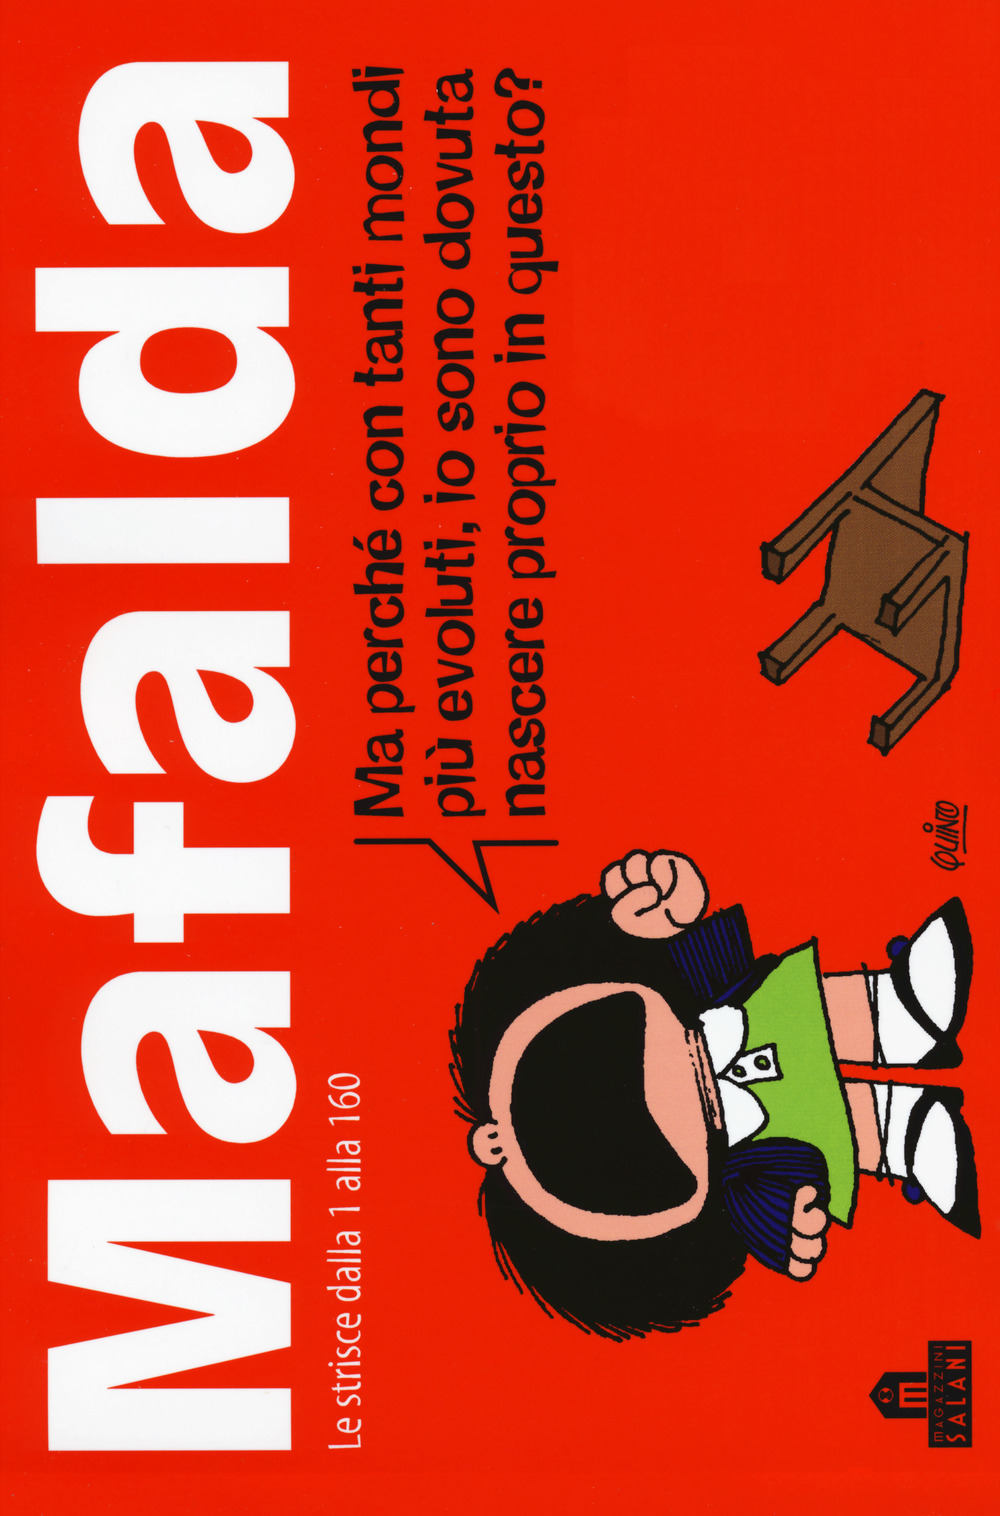 Mafalda. Le strisce dalla 1 alla 160. Vol. 1